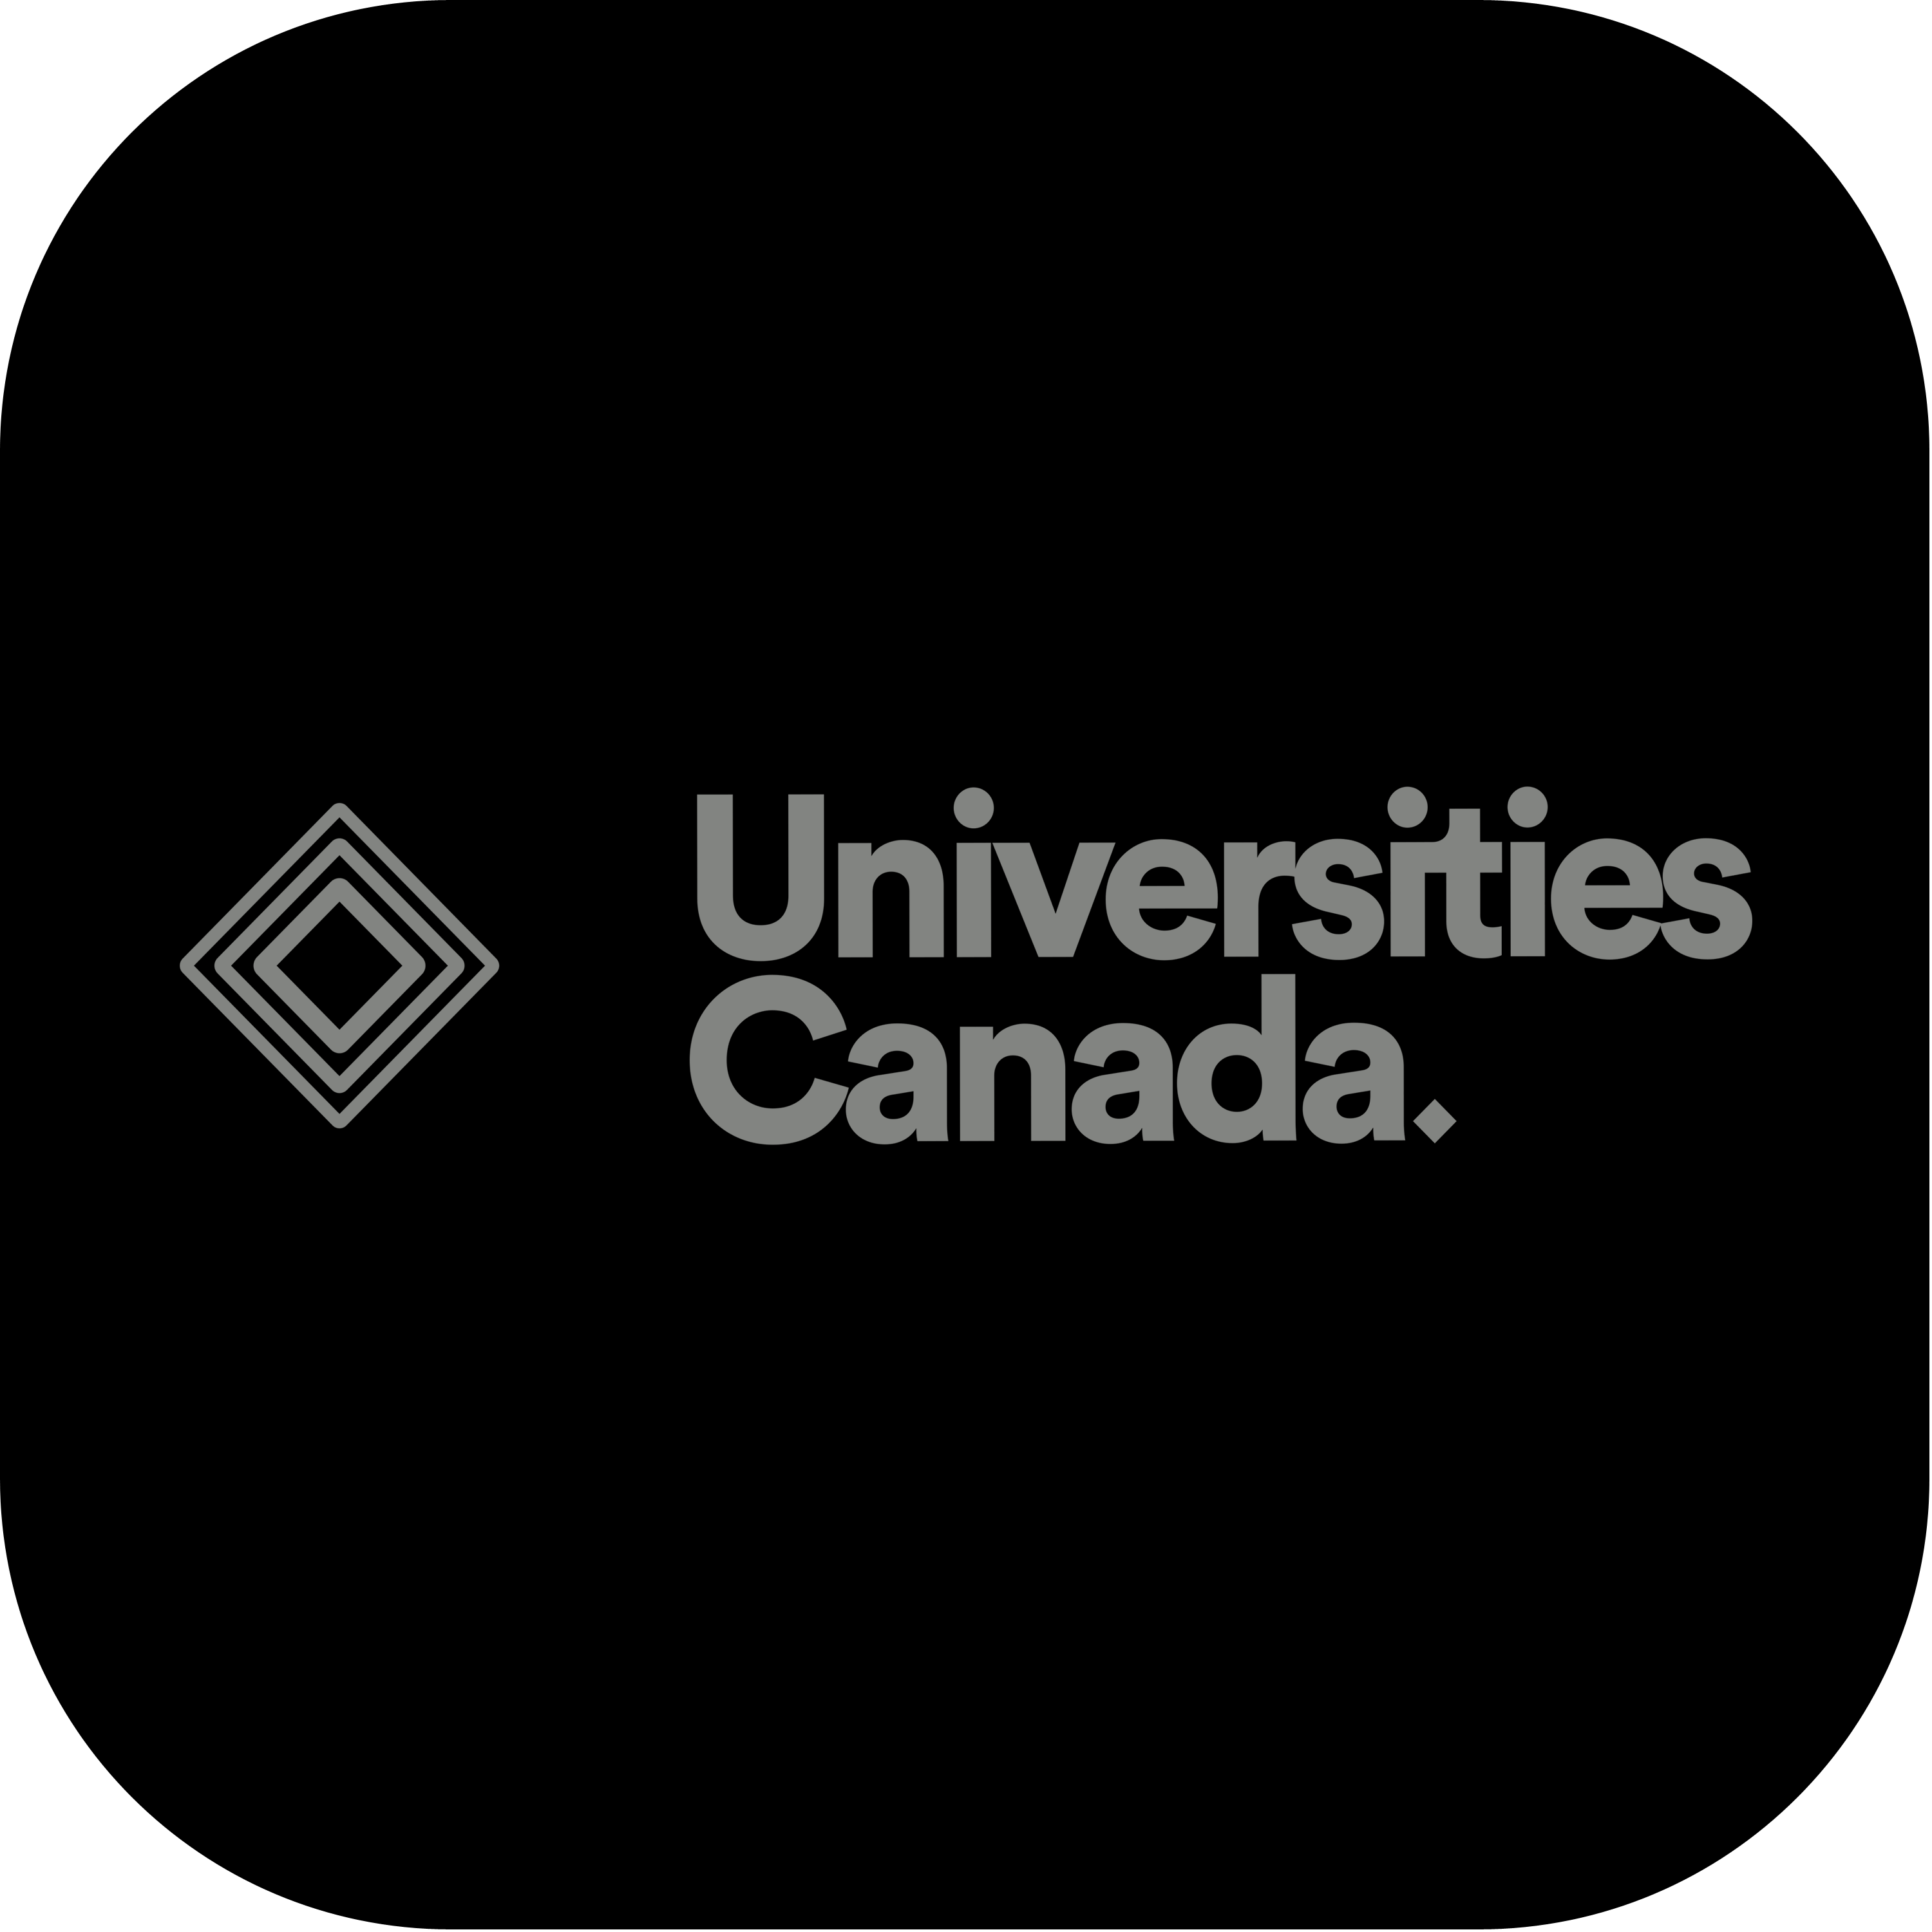 Universities Canada logo Transparent Picture